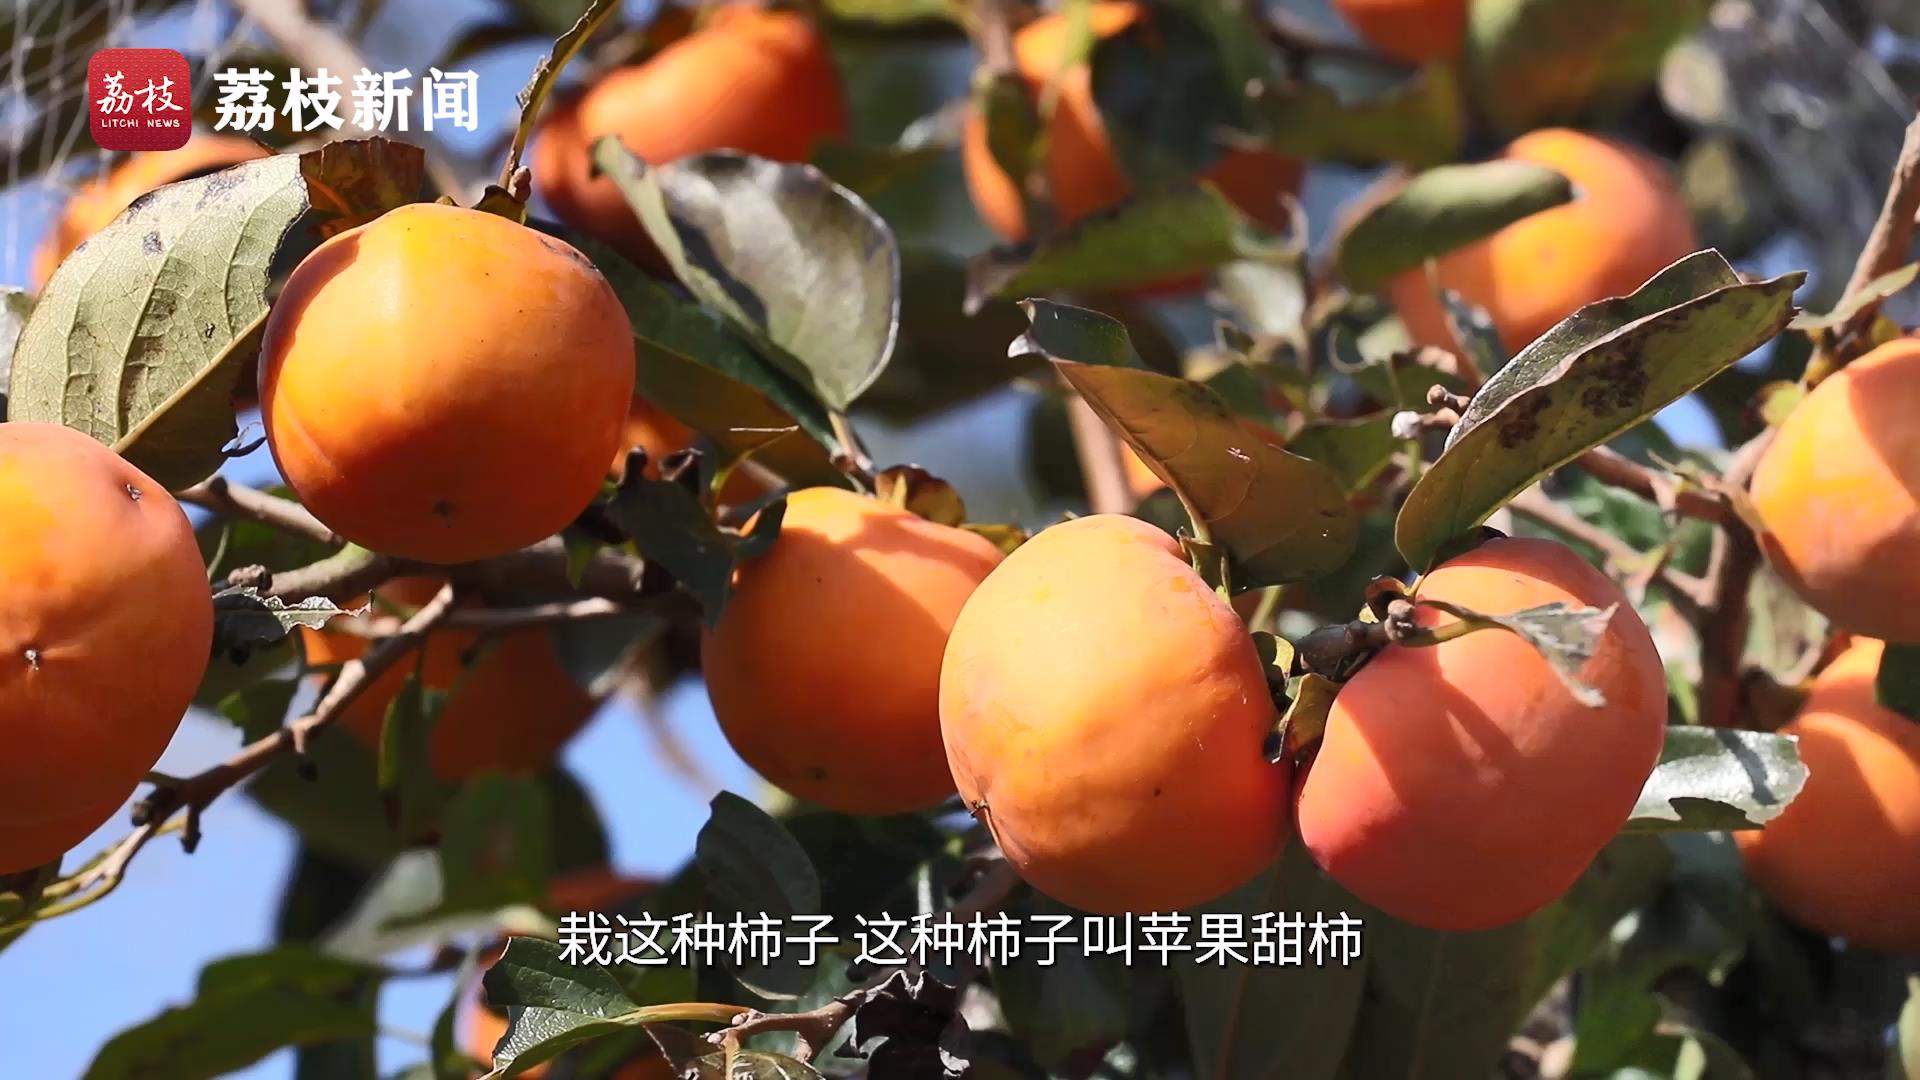 游遍江苏丨“柿”不可挡！这个周末相约去南京六合摘柿子